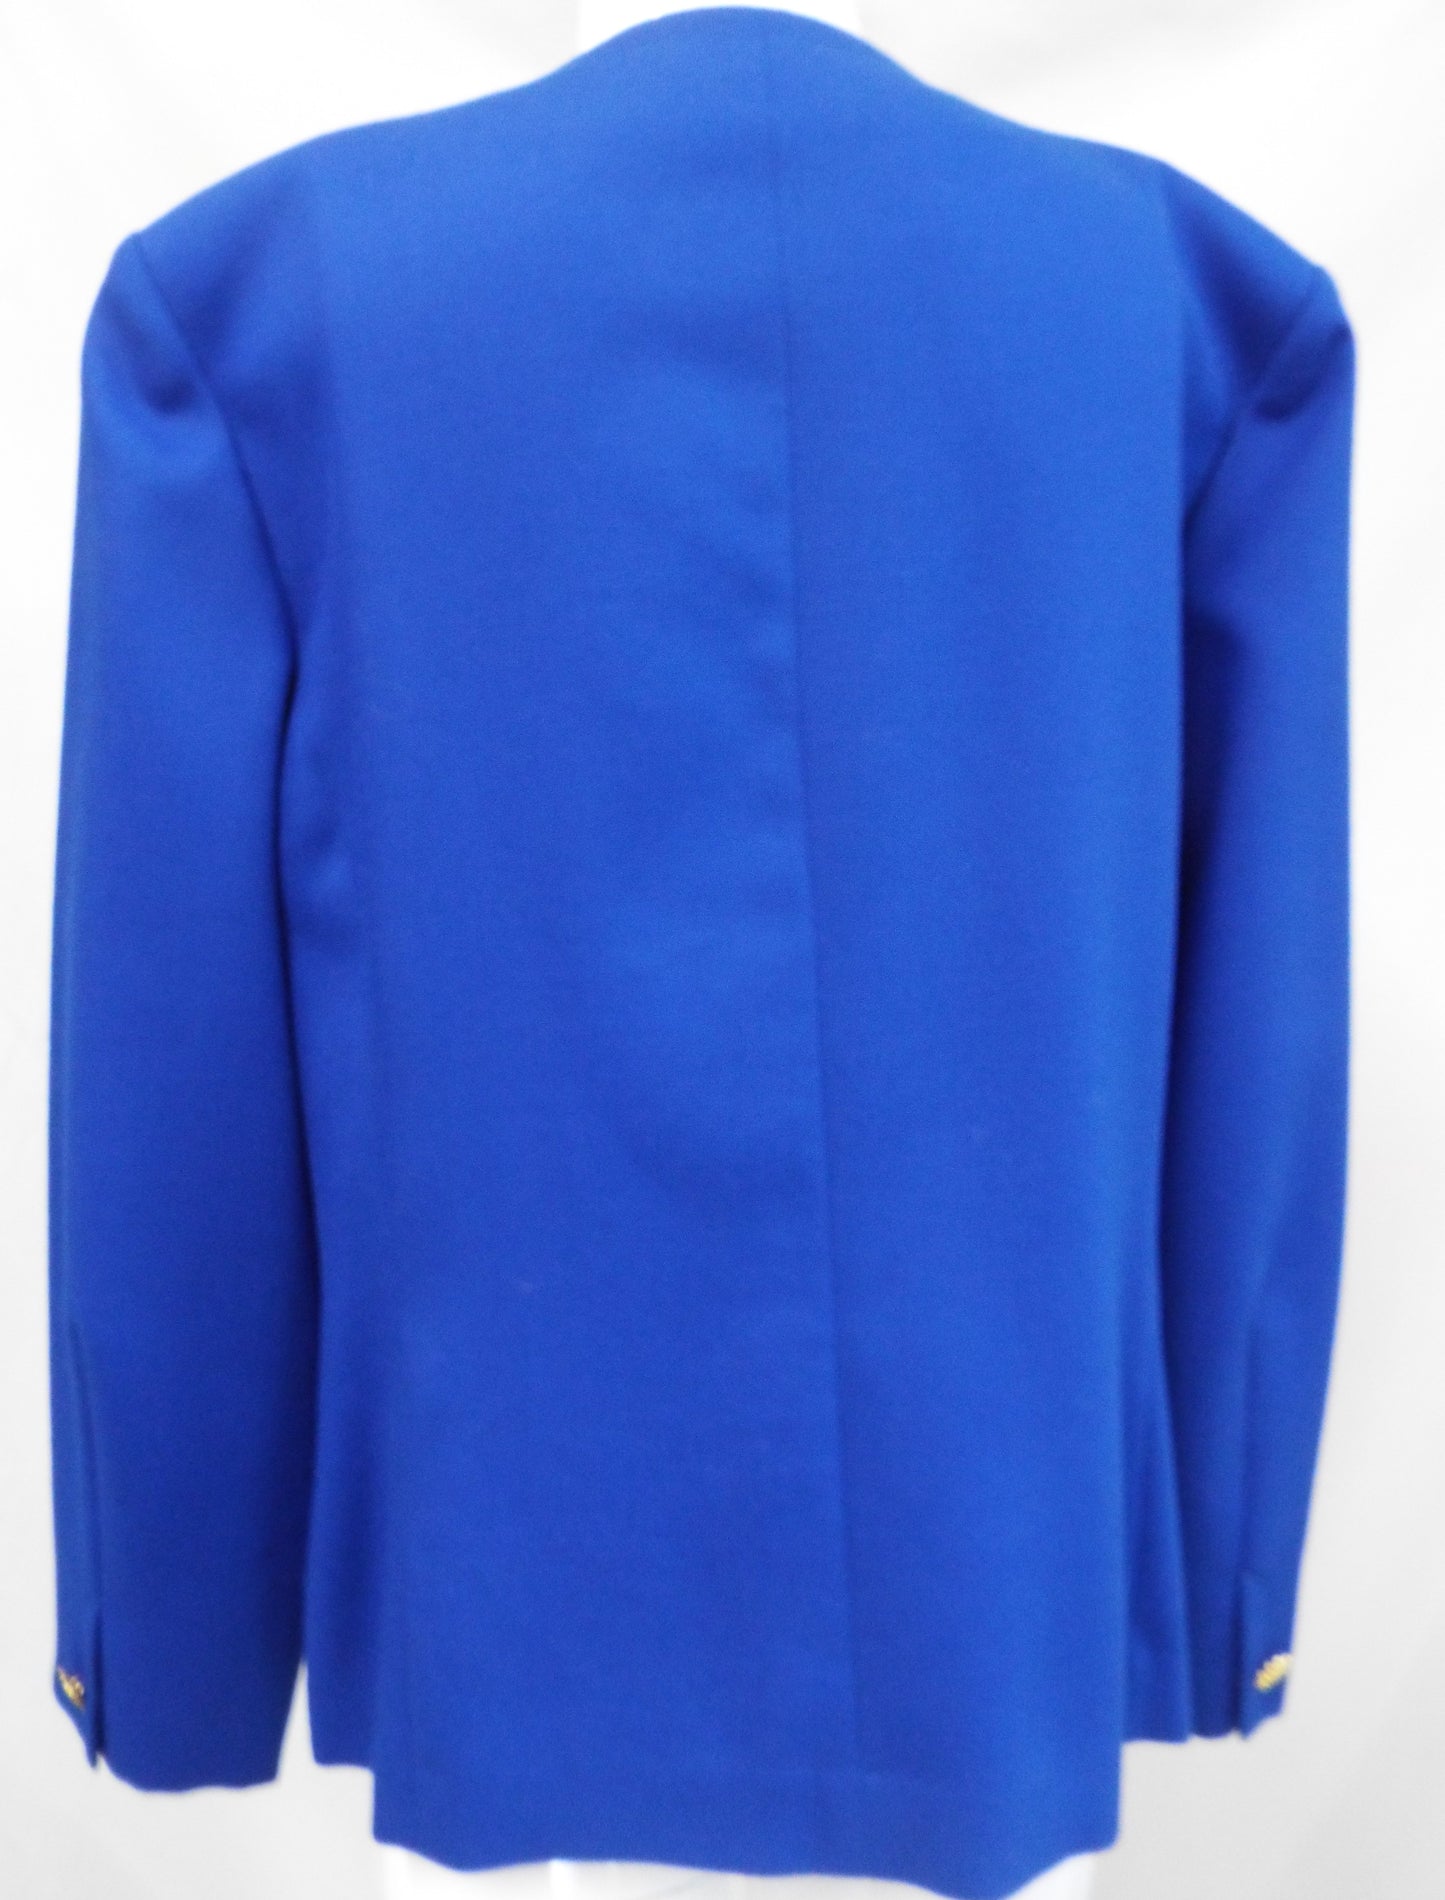 Vintage Royal Blue Smart Jacket Size 16